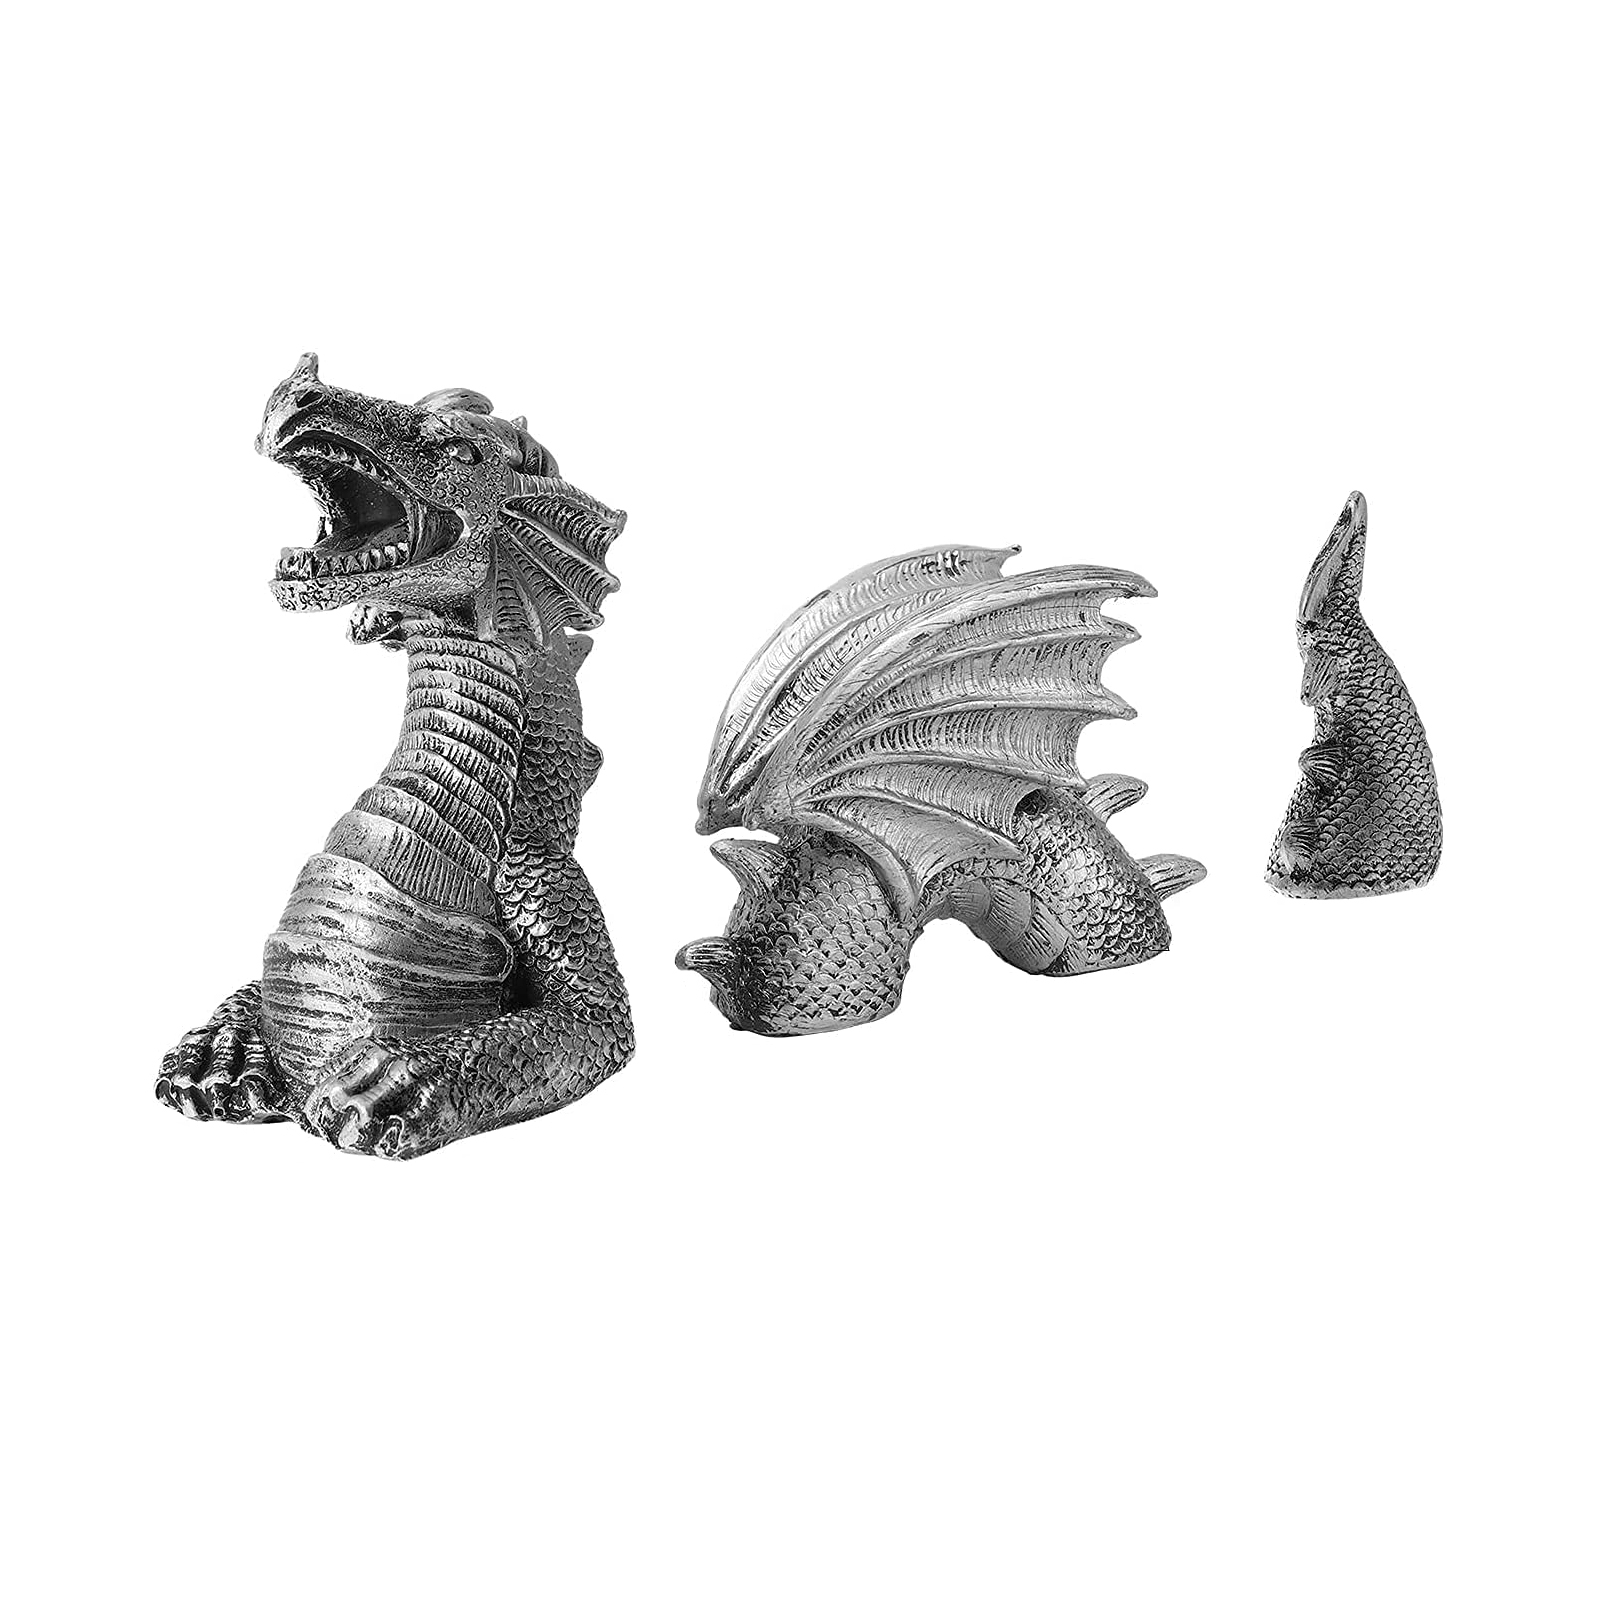 Gothic Dragon Statues Fantasy Animal Dragon Figures Garden Decor (White)